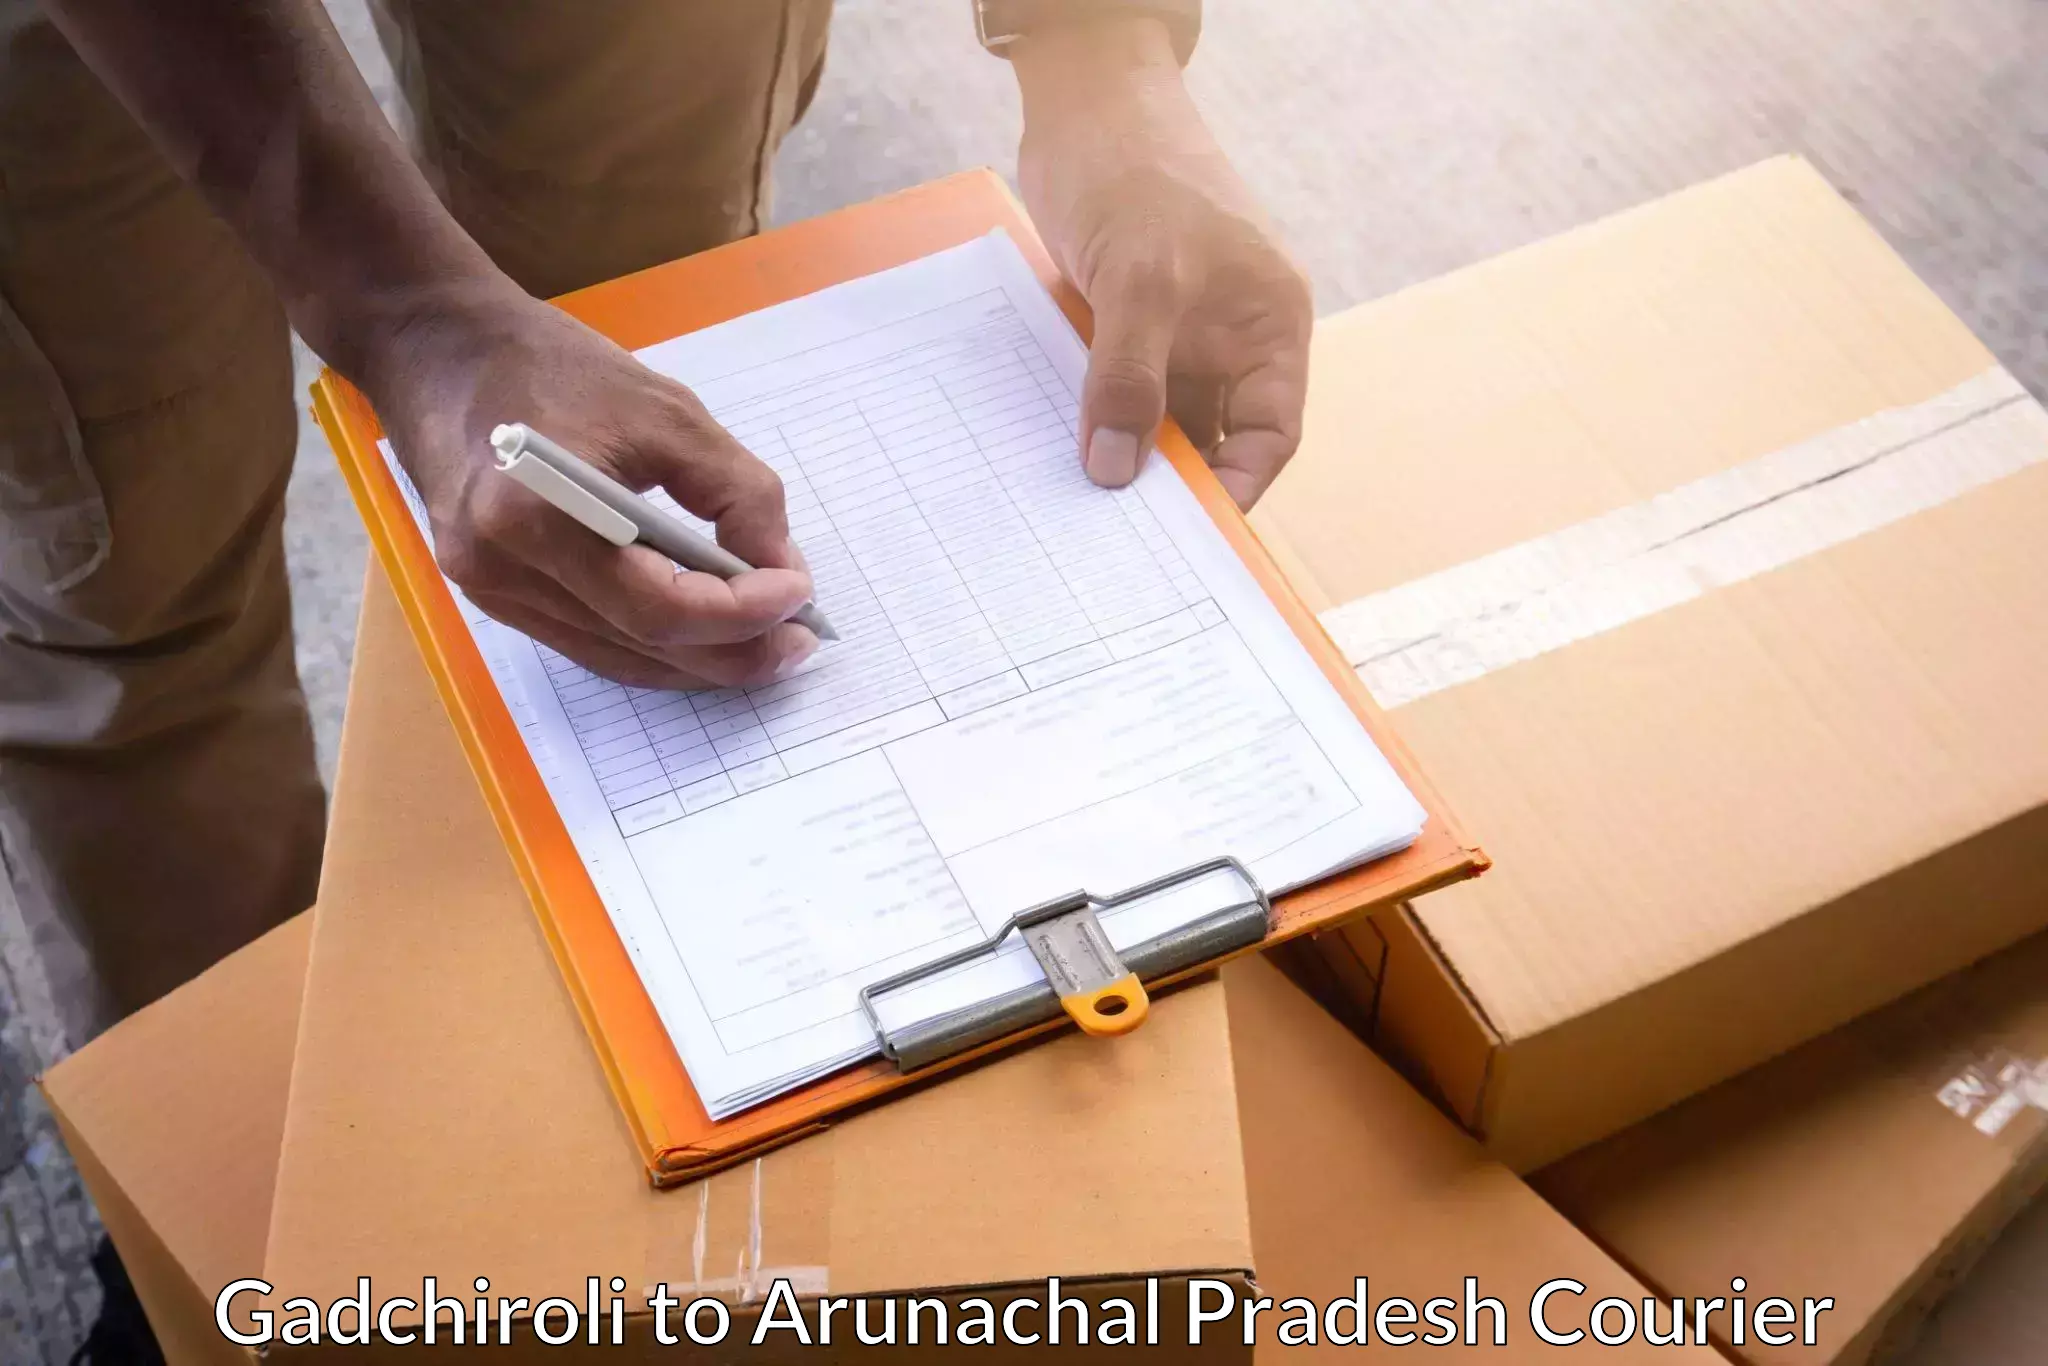 Courier dispatch services Gadchiroli to Arunachal Pradesh